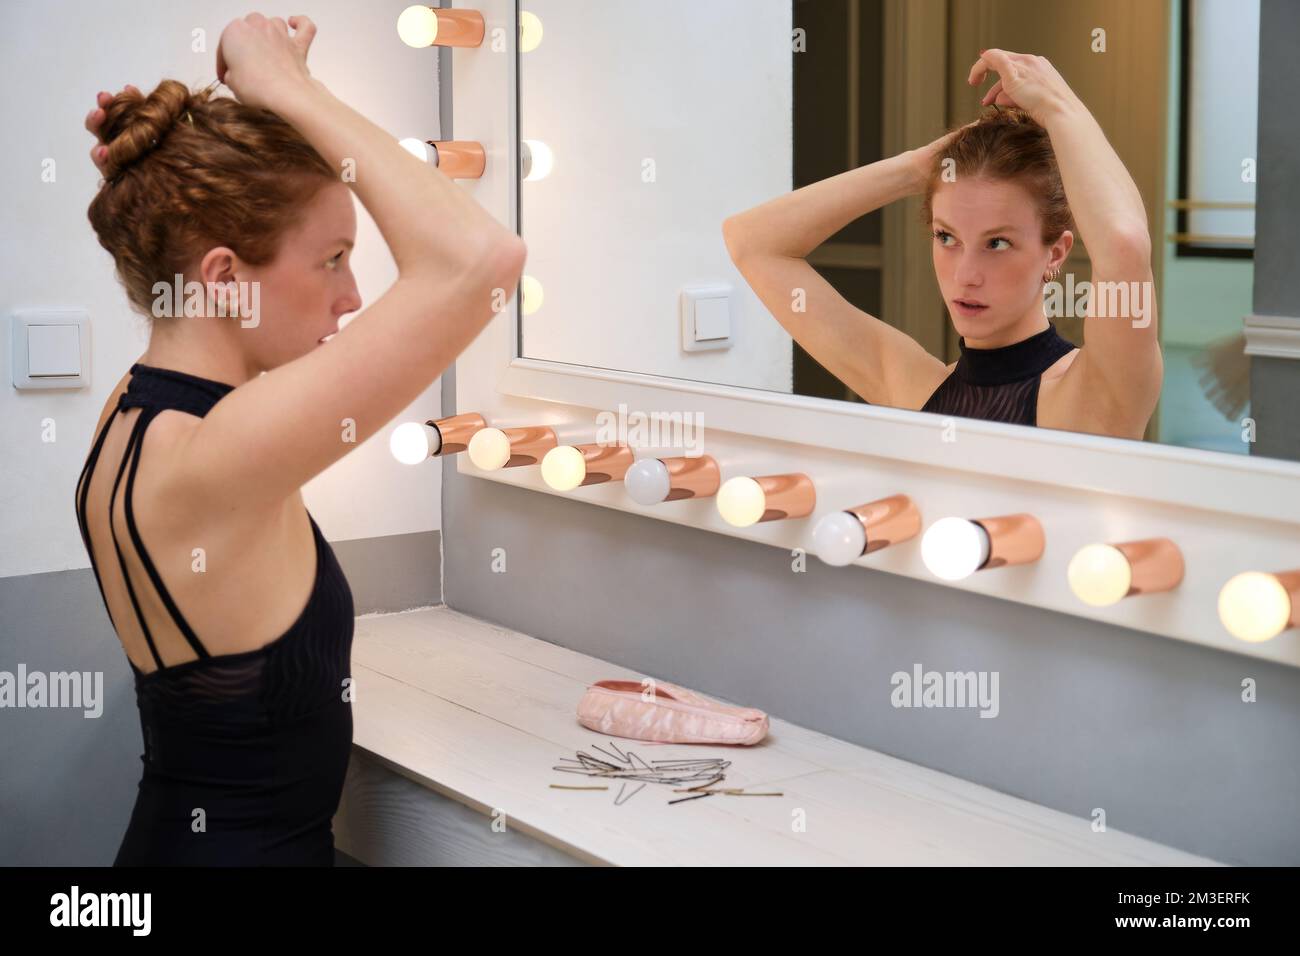 Junge Ballerina, die ihr Haar mit haarnadeln in ein Brötchen frisiert. Stockfoto